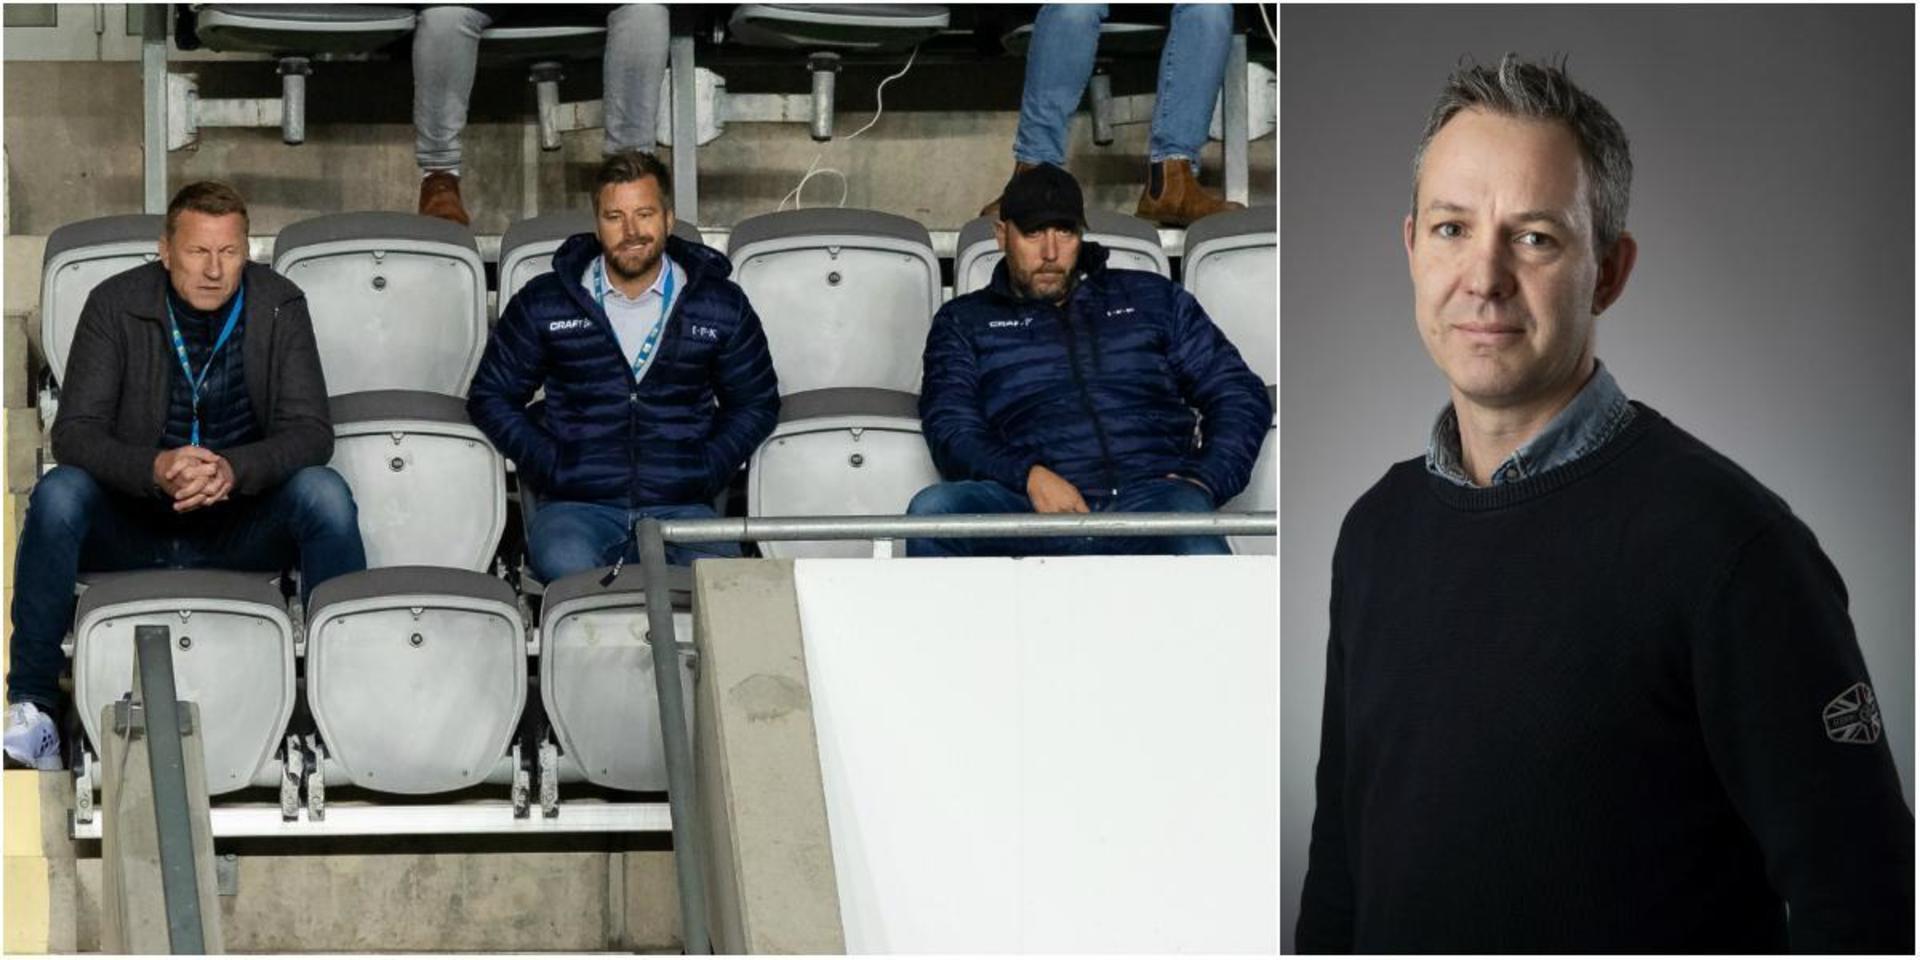 IFK Göteborgs före detta sportchef Kennet Andersson, nuvarande sportchef Pontus Farnerud och klubbdirektör Max Markusson.